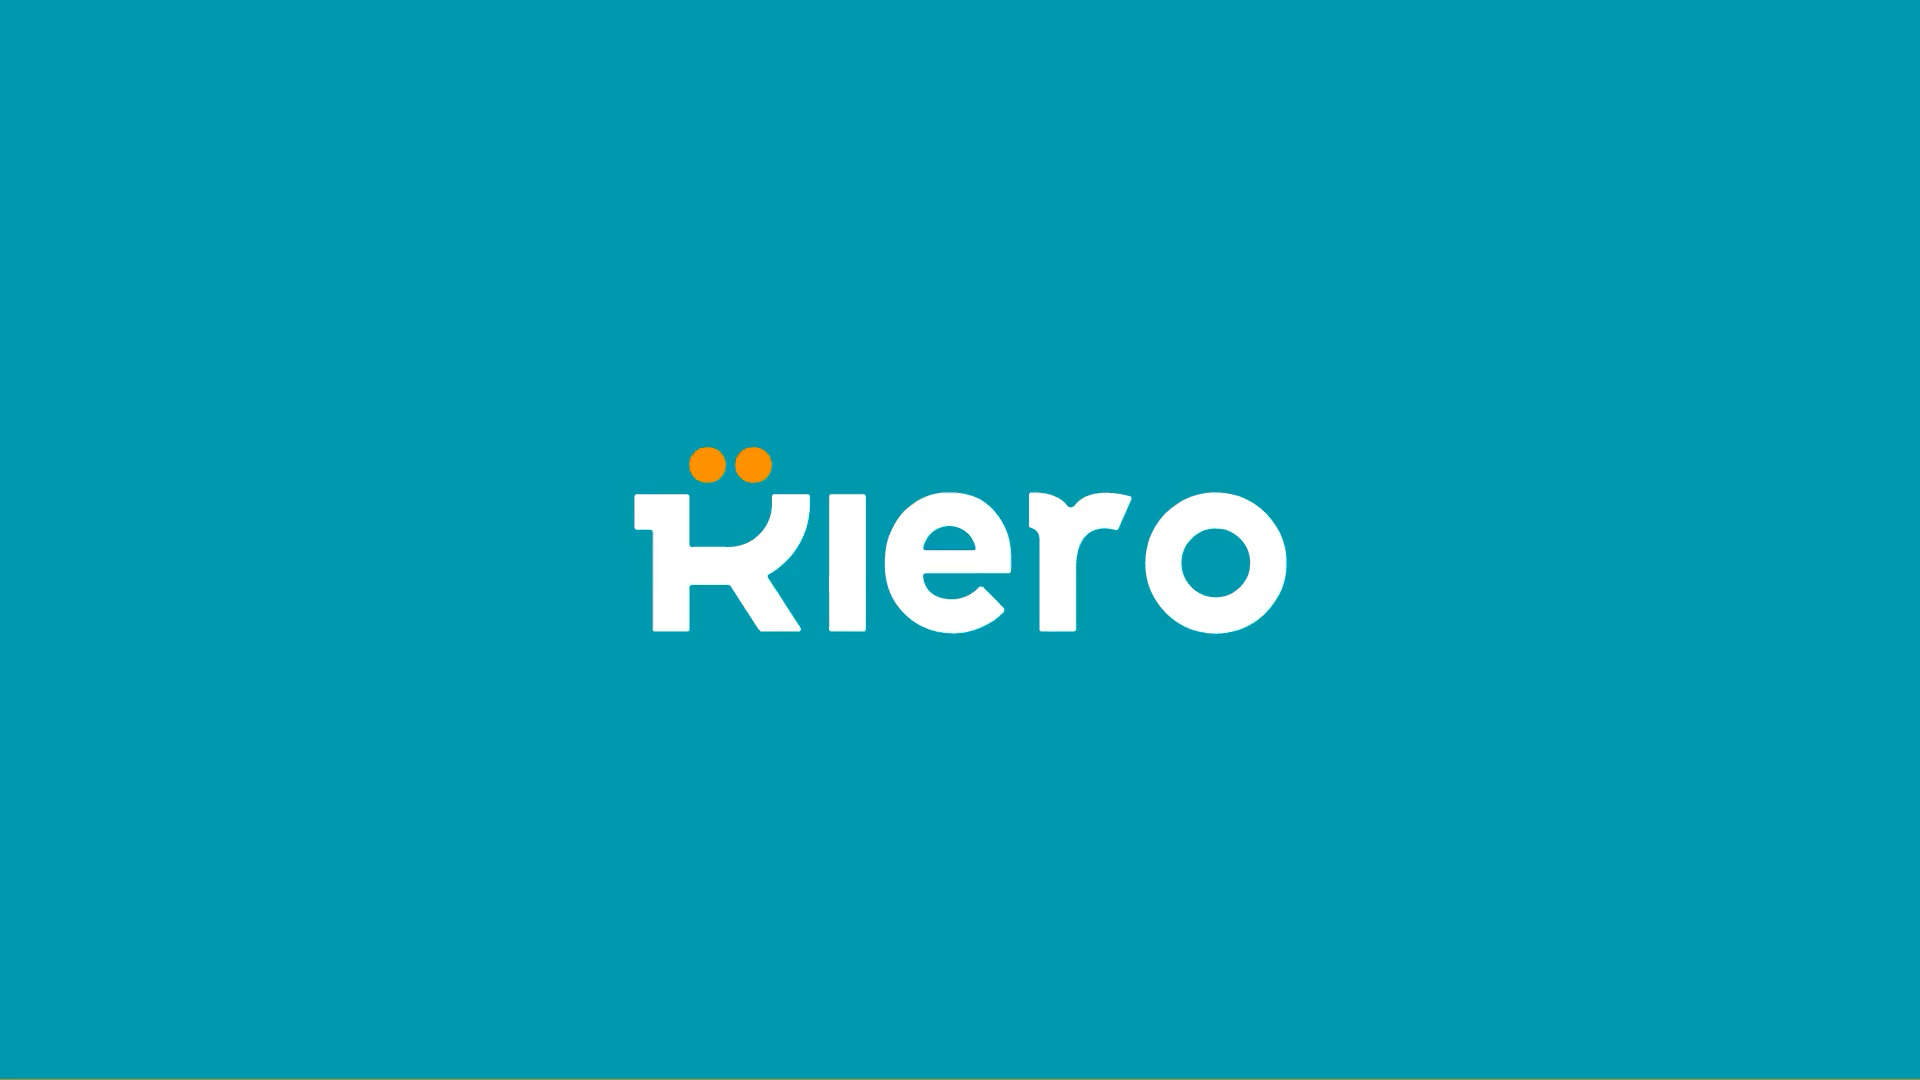 Kiero Brand